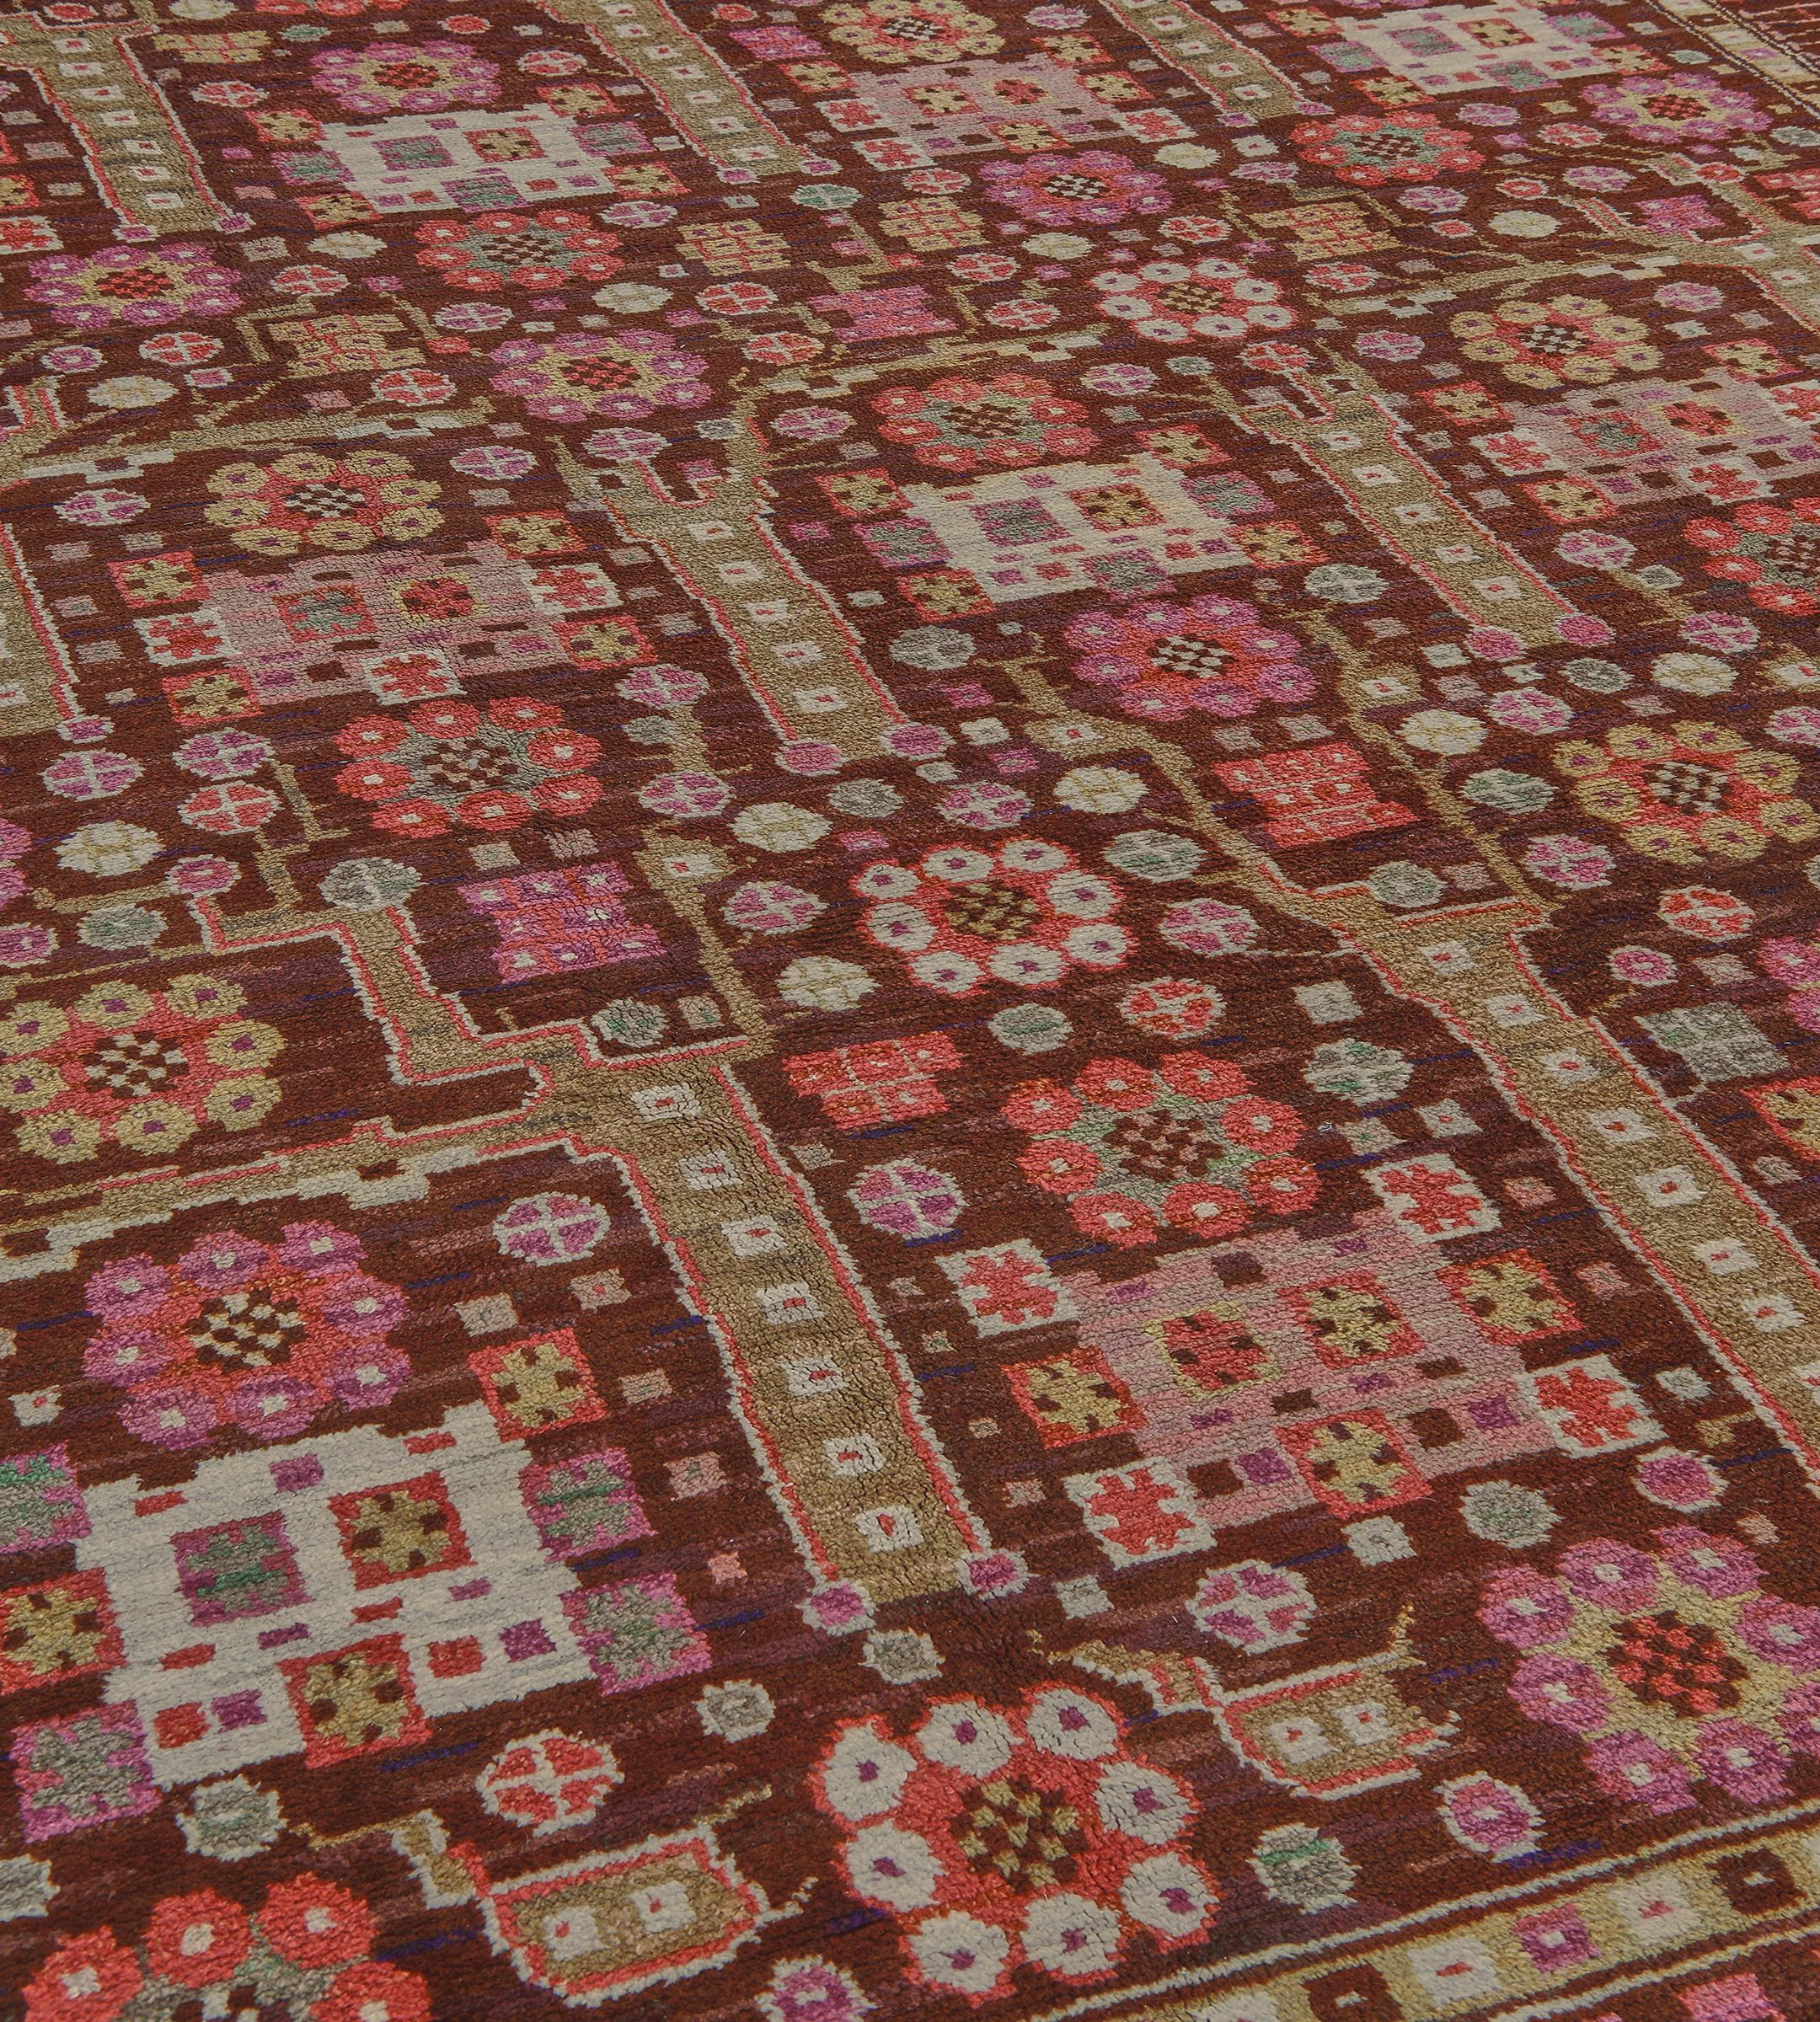 Dieser traditionelle handgewebte schwedische Teppich hat ein schattiertes schokoladenbraunes Feld mit stilisierten Rosettenanhängern und kühnen Halmen, die ein weiteres Blumenmotiv in einer schattierten korallenroten Mäanderbordüre zwischen